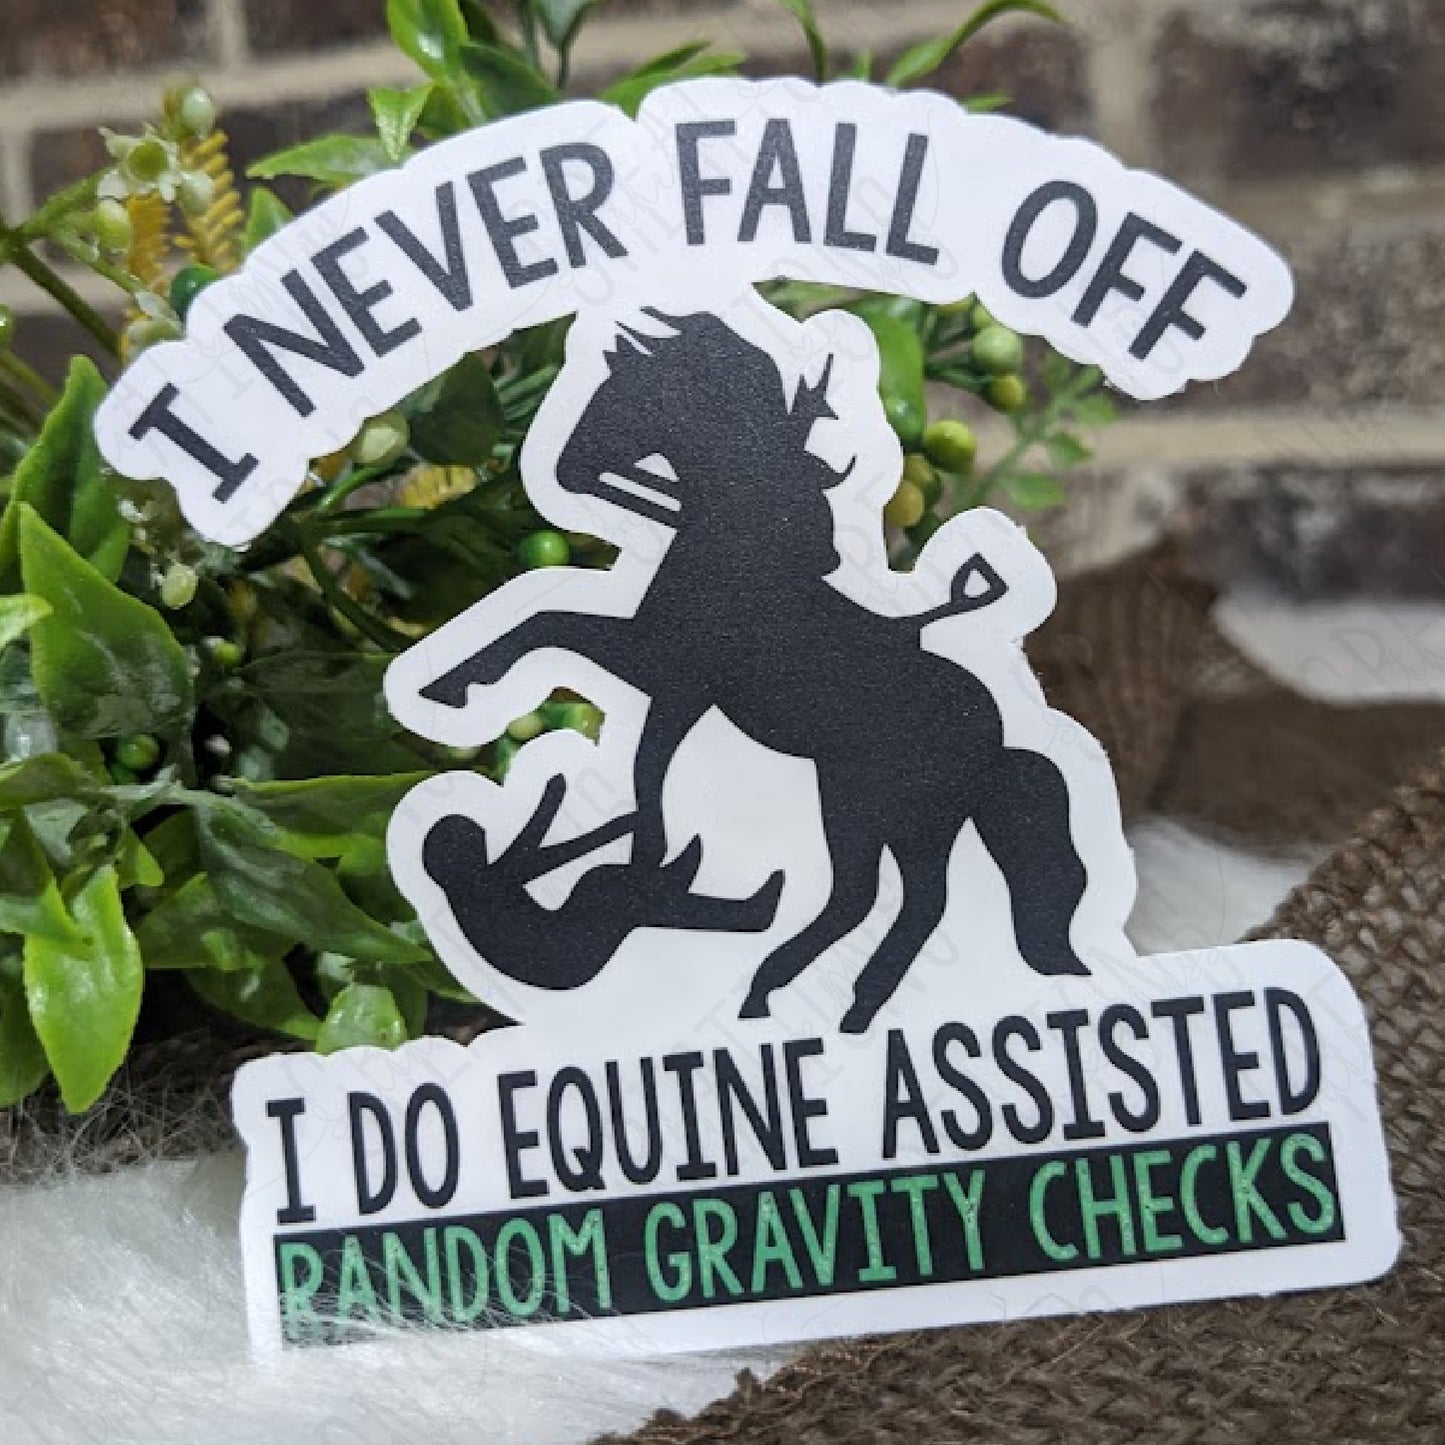 Equine Assisted Random Gravity Checks